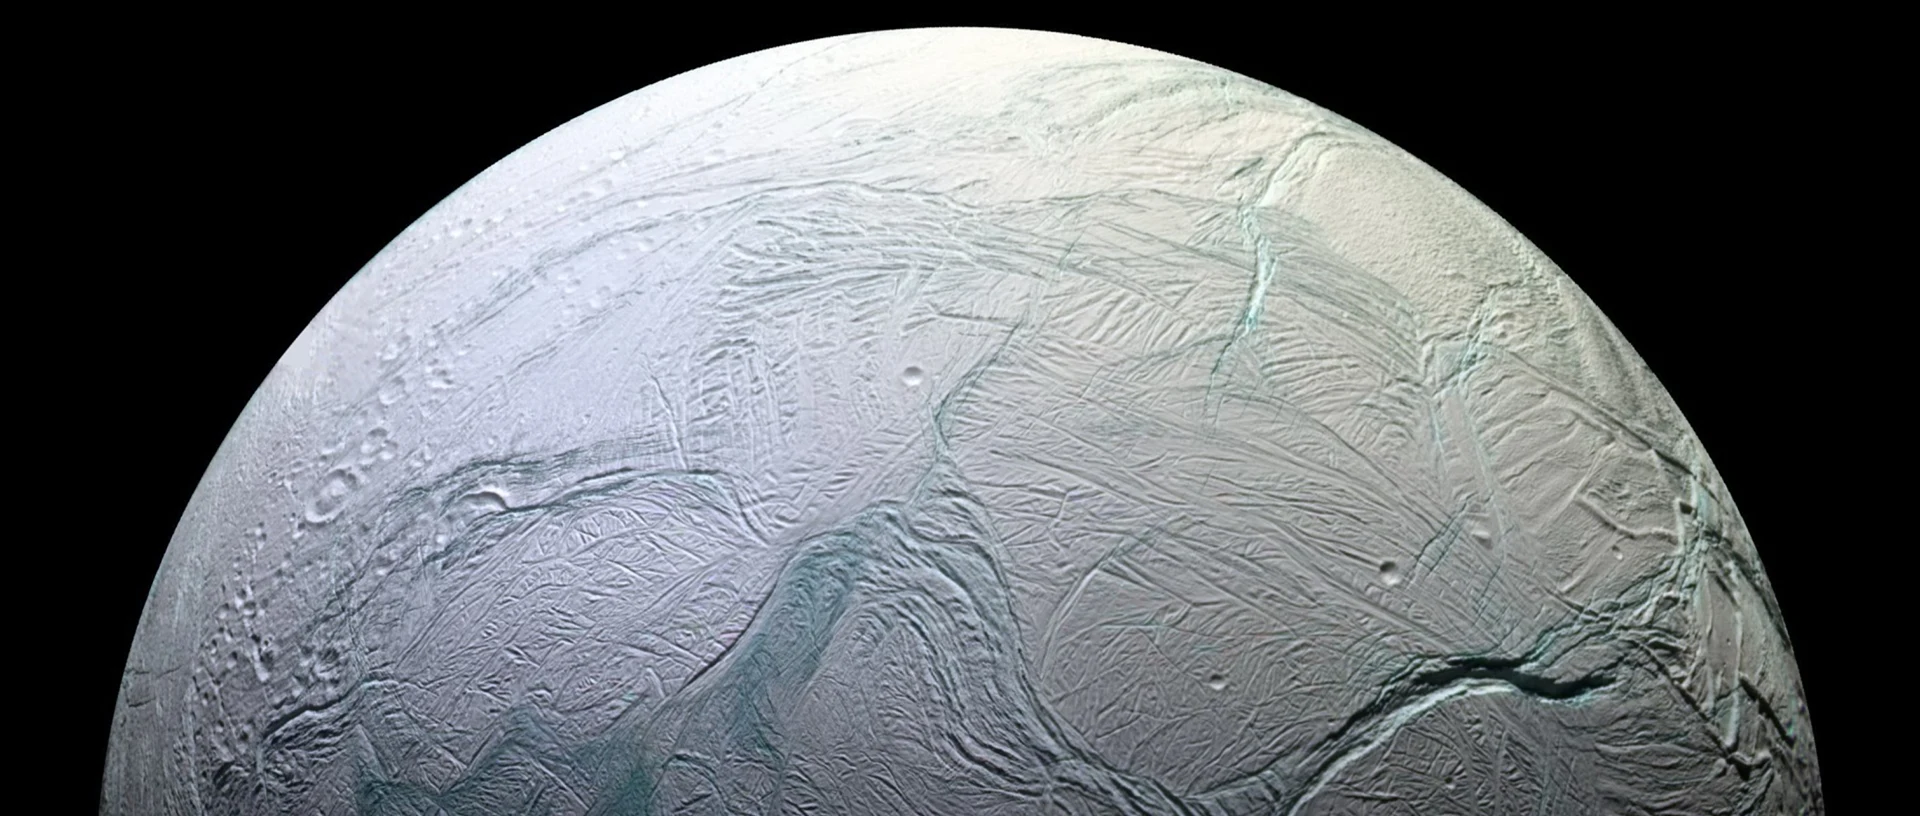 Illustration des Enceladus mit einer weißen Oberfläche, die von blauen Adern durchzogen ist.